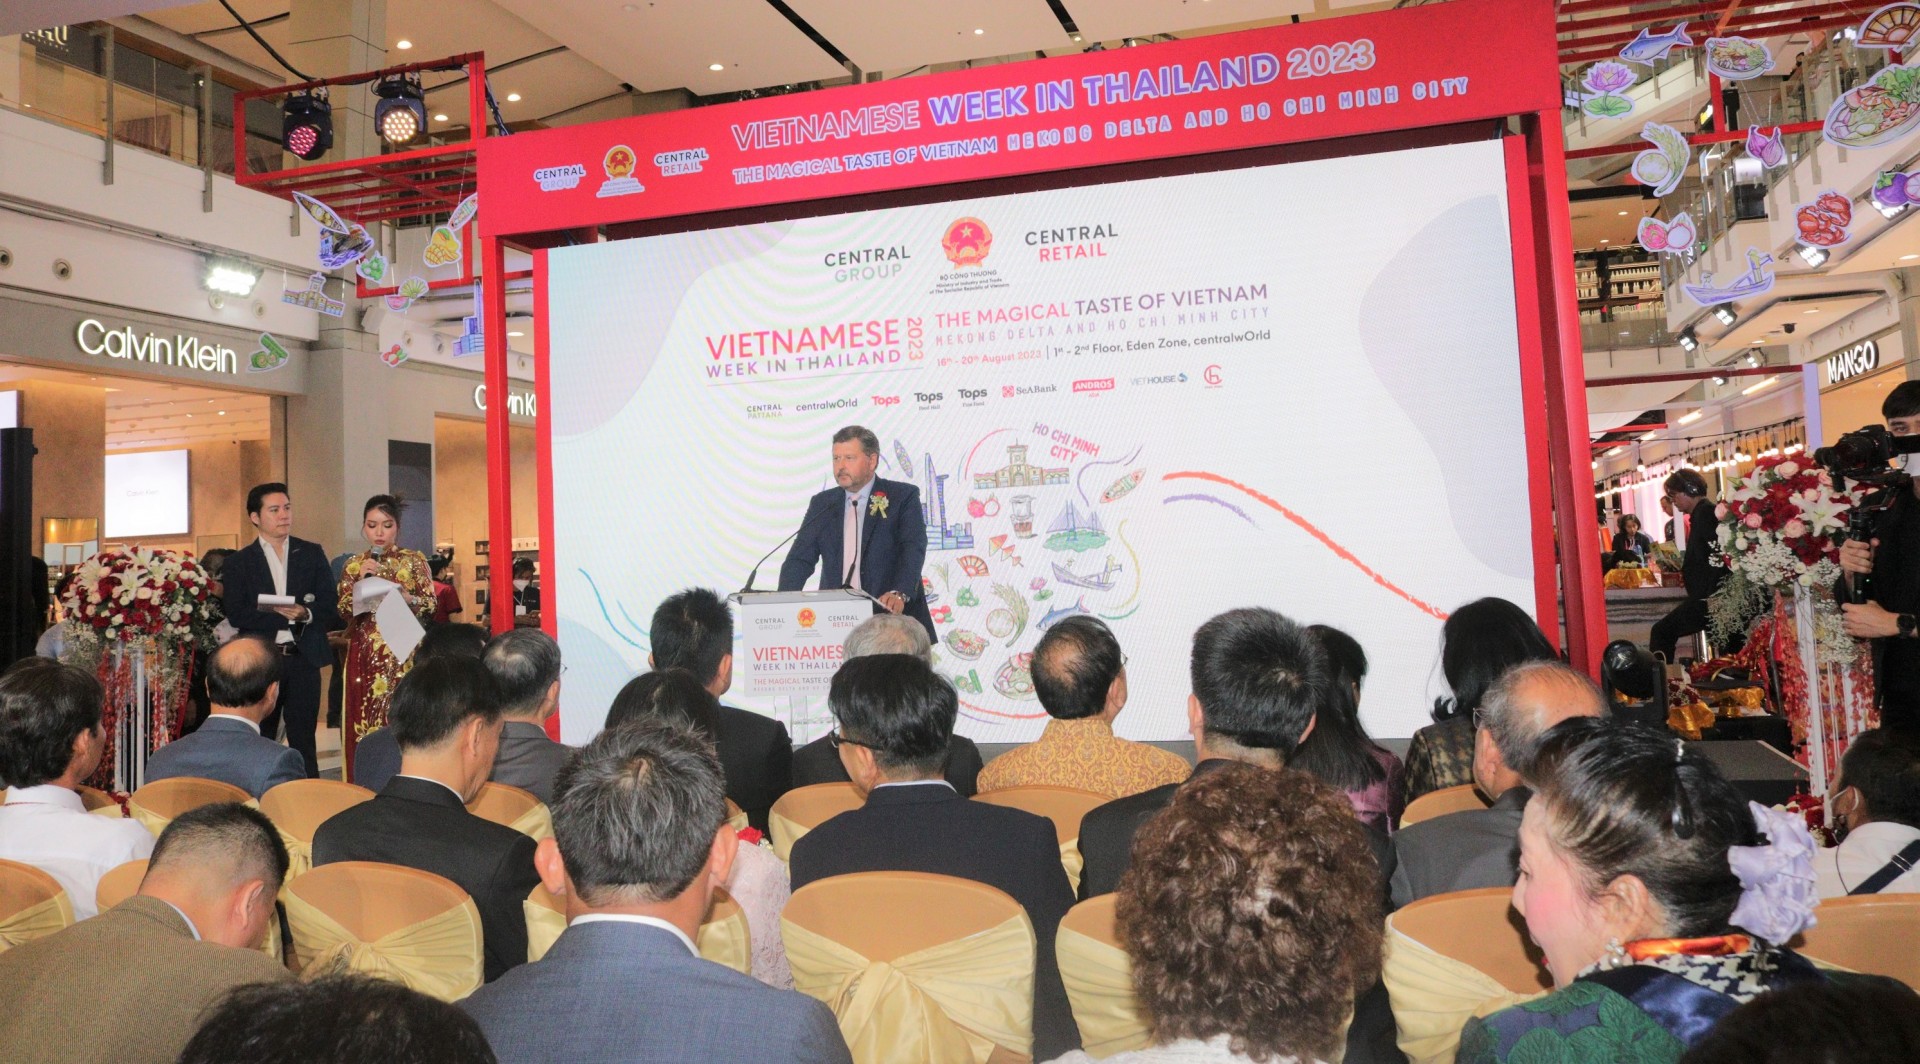 Tuần hàng Việt Nam tại Thái Lan 2023: Cơ hội cho gần 100 doanh nghiệp Việt Nam tham gia kết nối giao thương